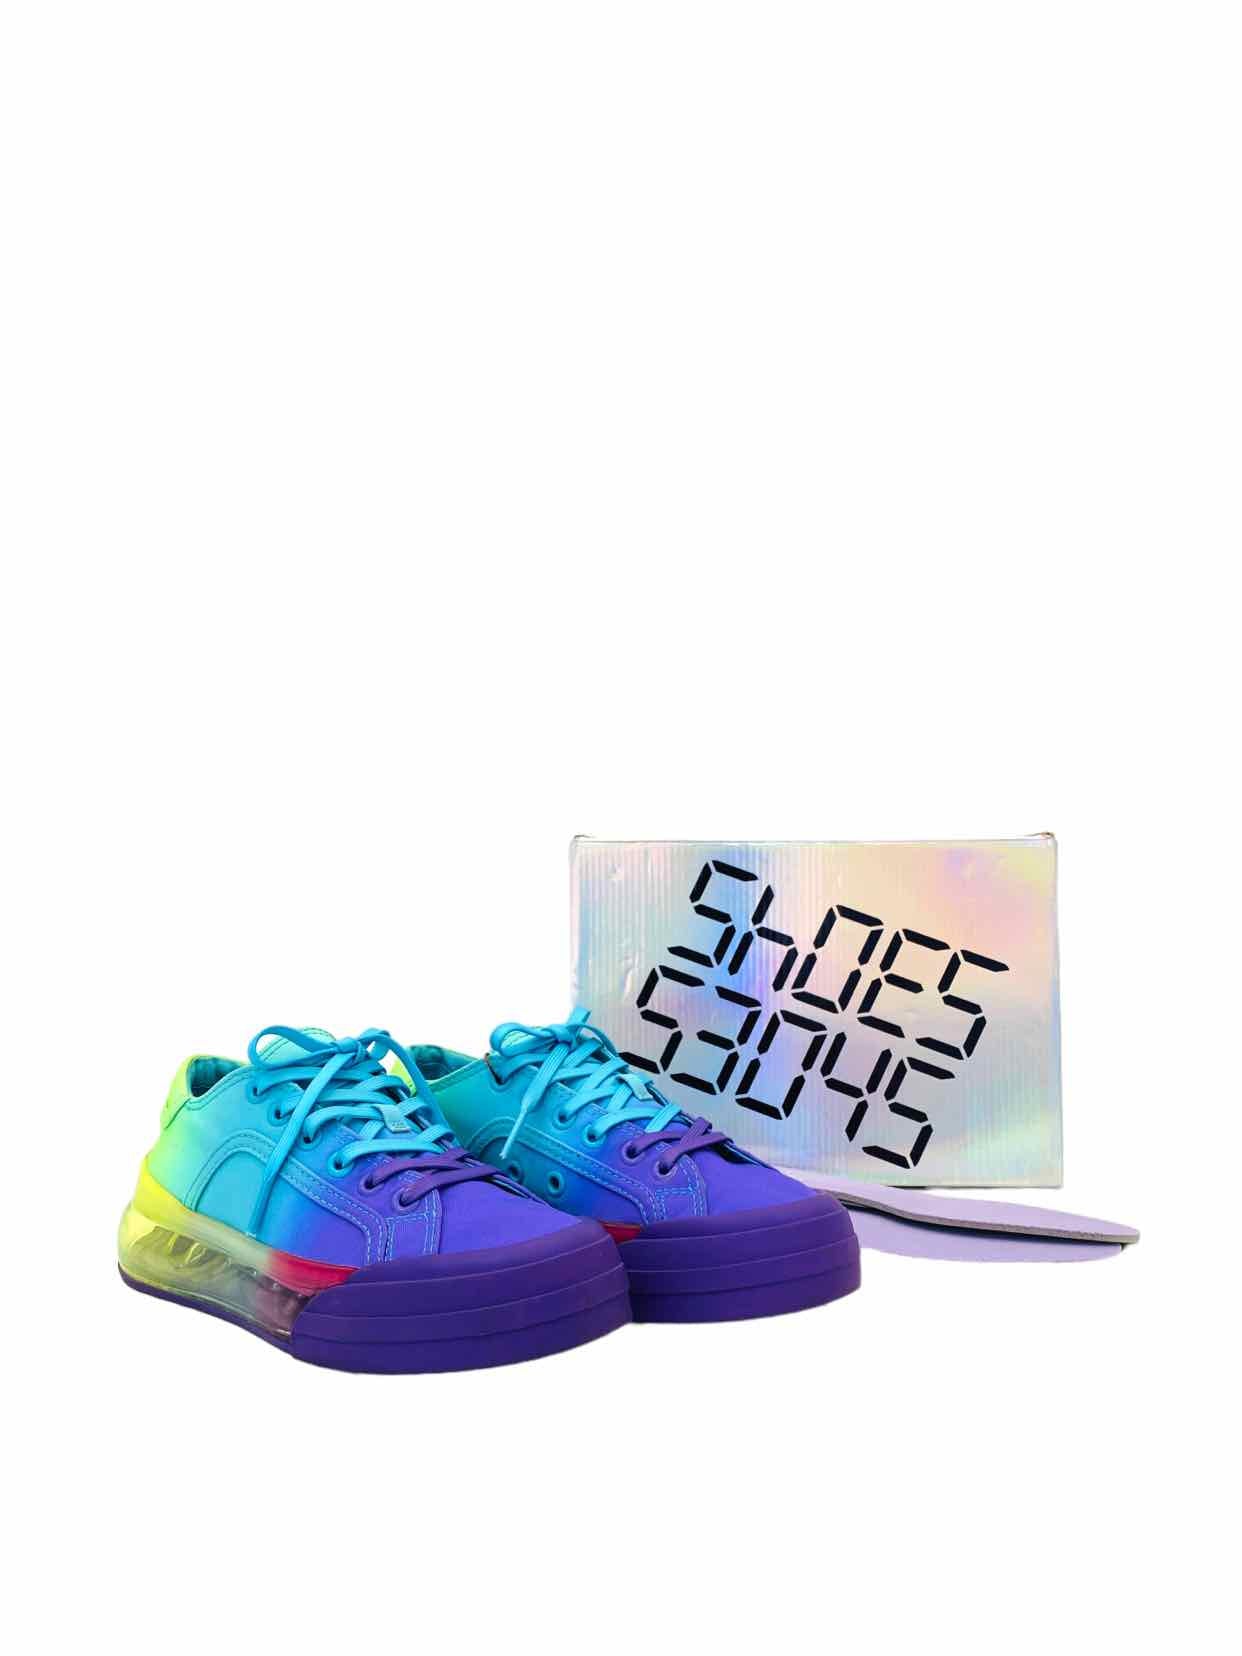 SHOES 53045 Sneaker Air Purple Multicolor Sneakers